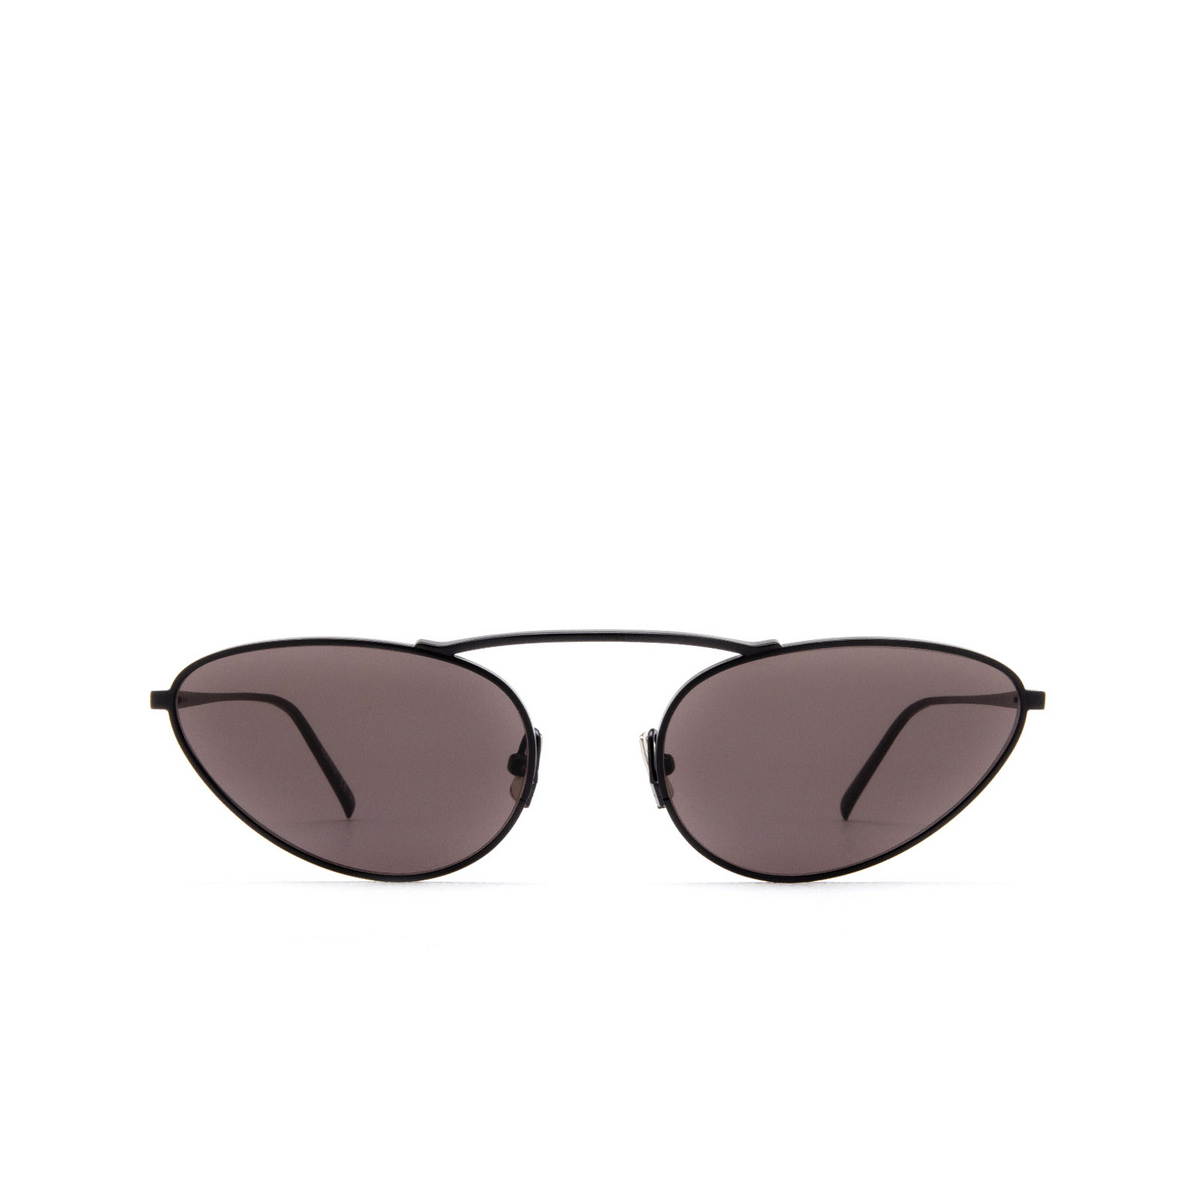 Saint Laurent SL 538 Sunglasses 001 Black - front view